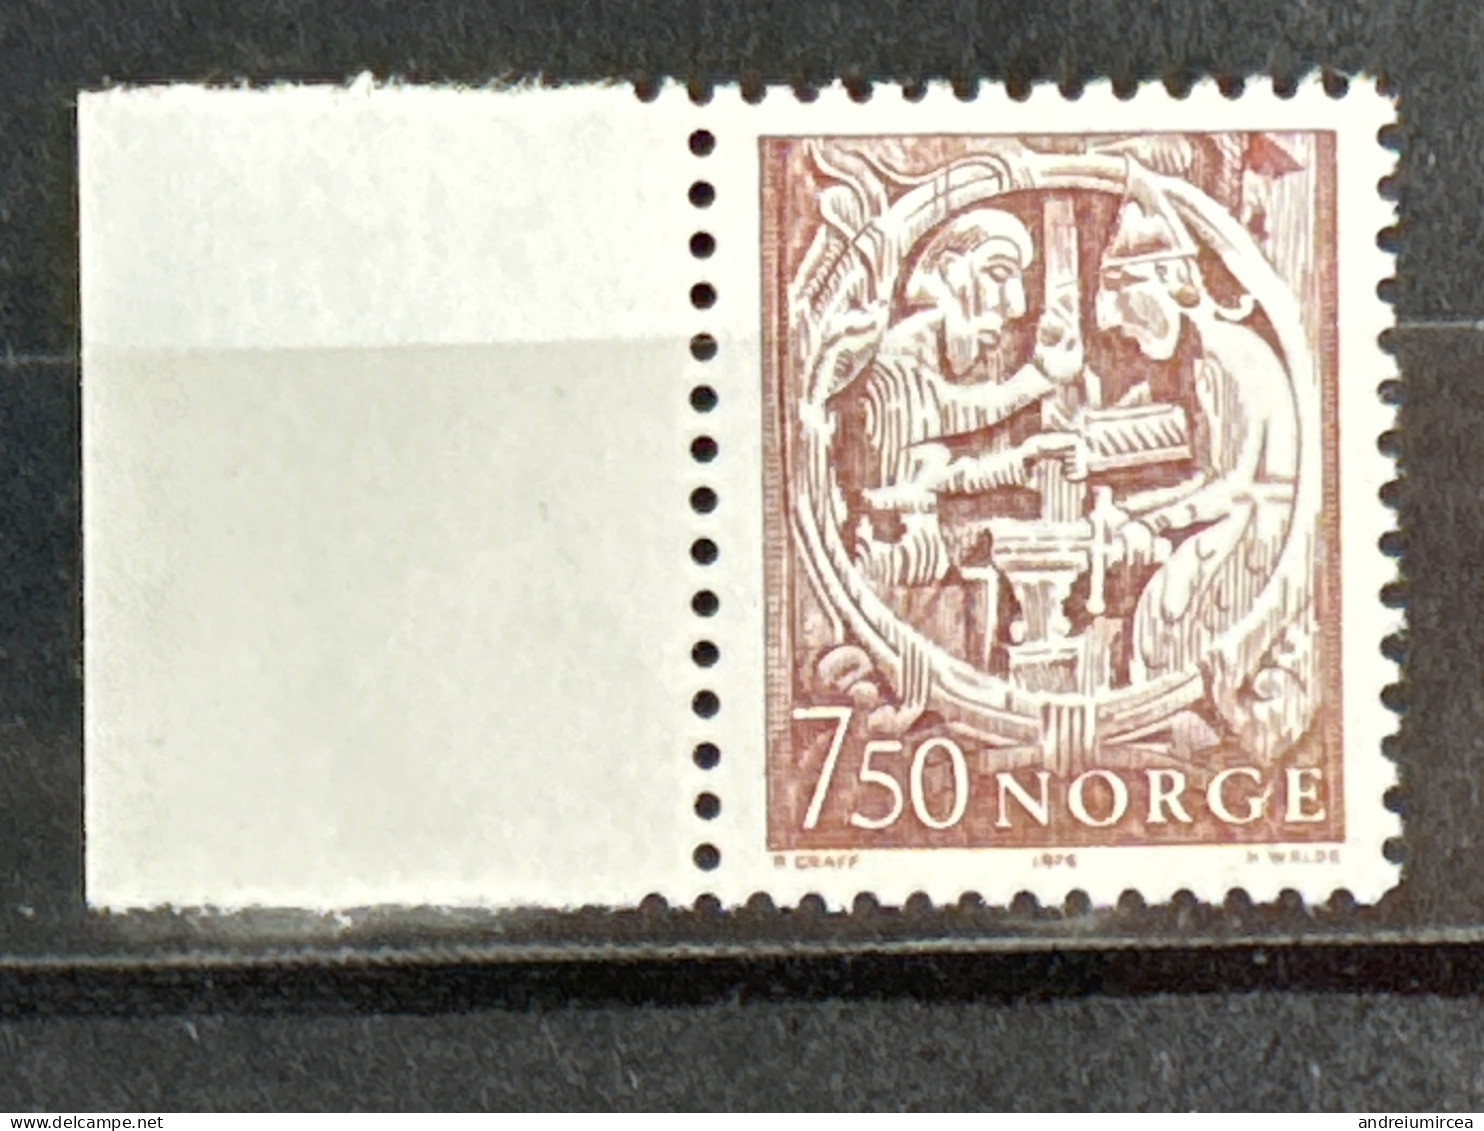 Norvege MNH 1976 - Unused Stamps